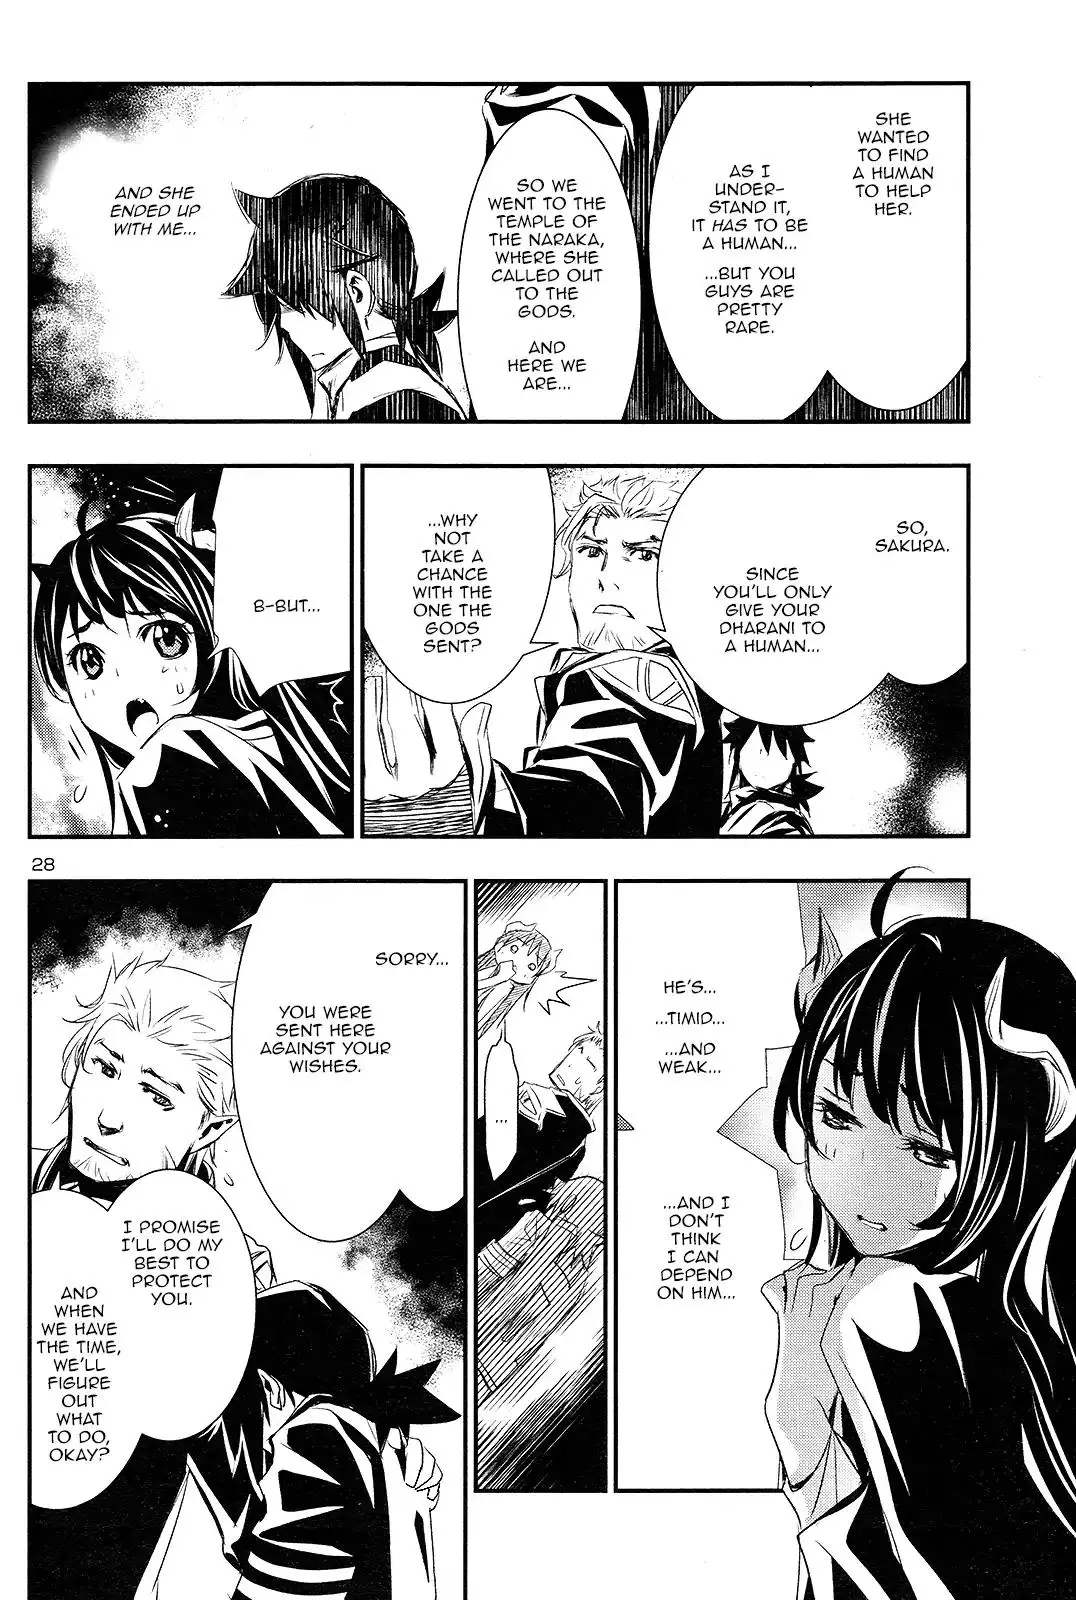 Shinju no Nectar - 1 page 28